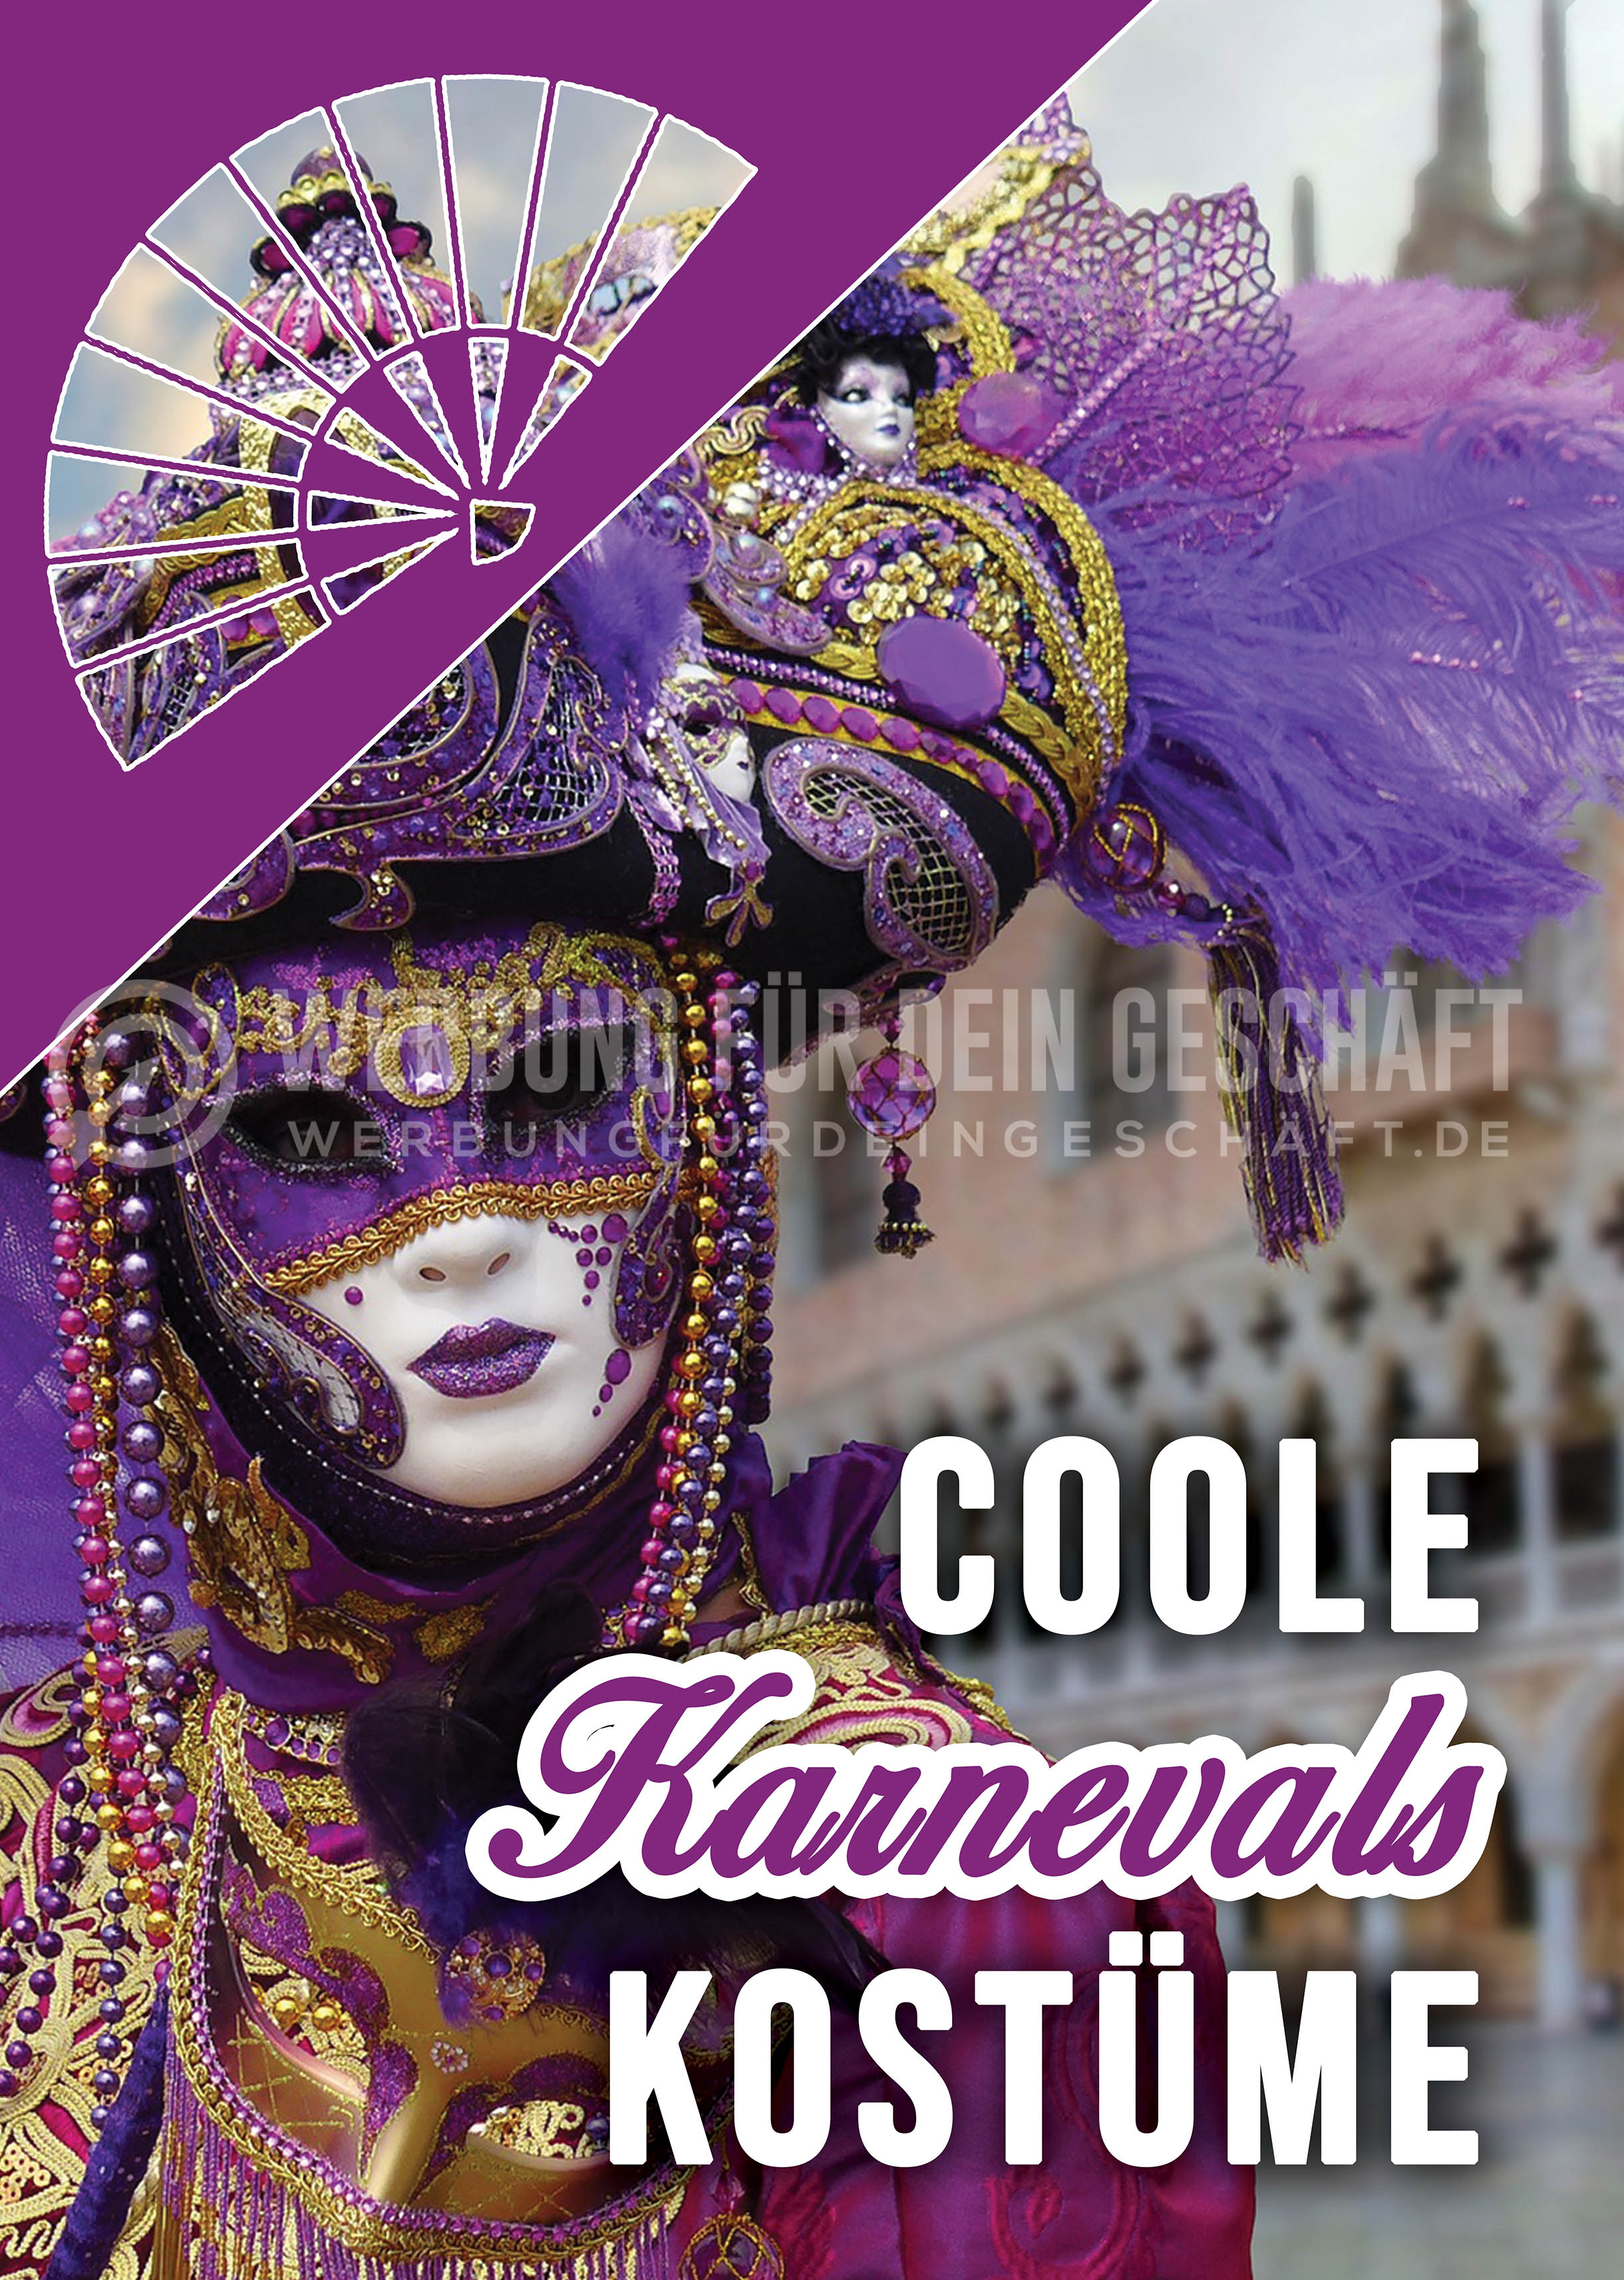 Coole Karnevals Kostüme Poster | Plakat für Werbeaufsteller